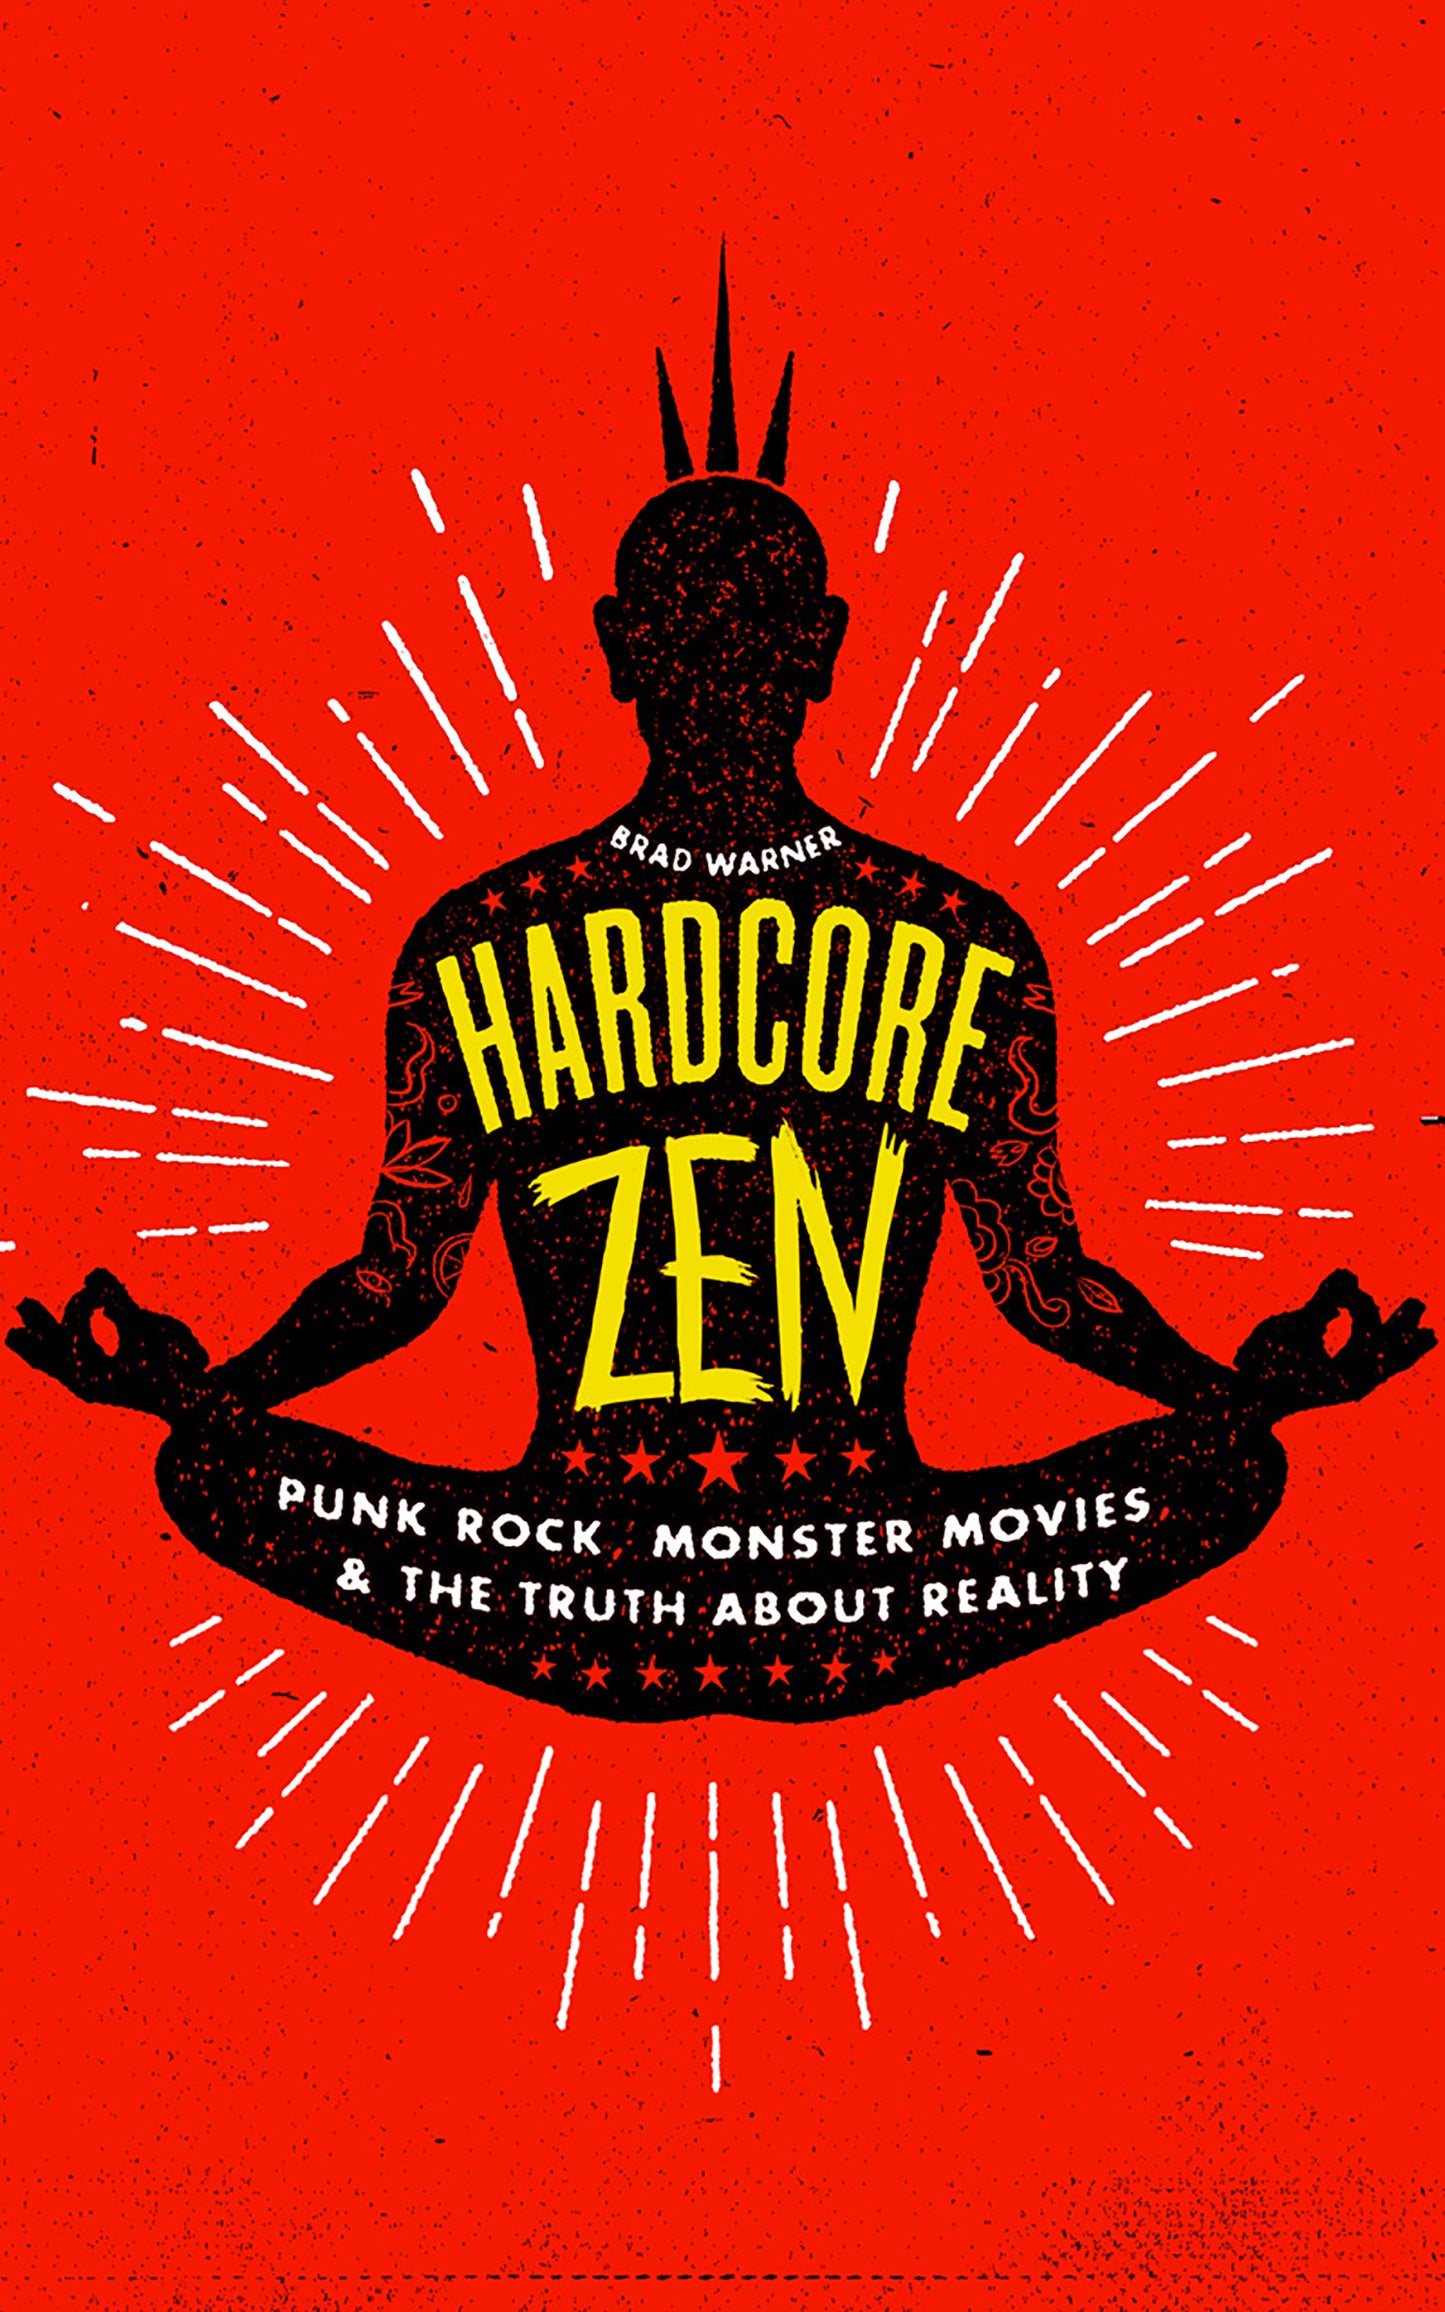 Hardcore Zen, by Brad Warner